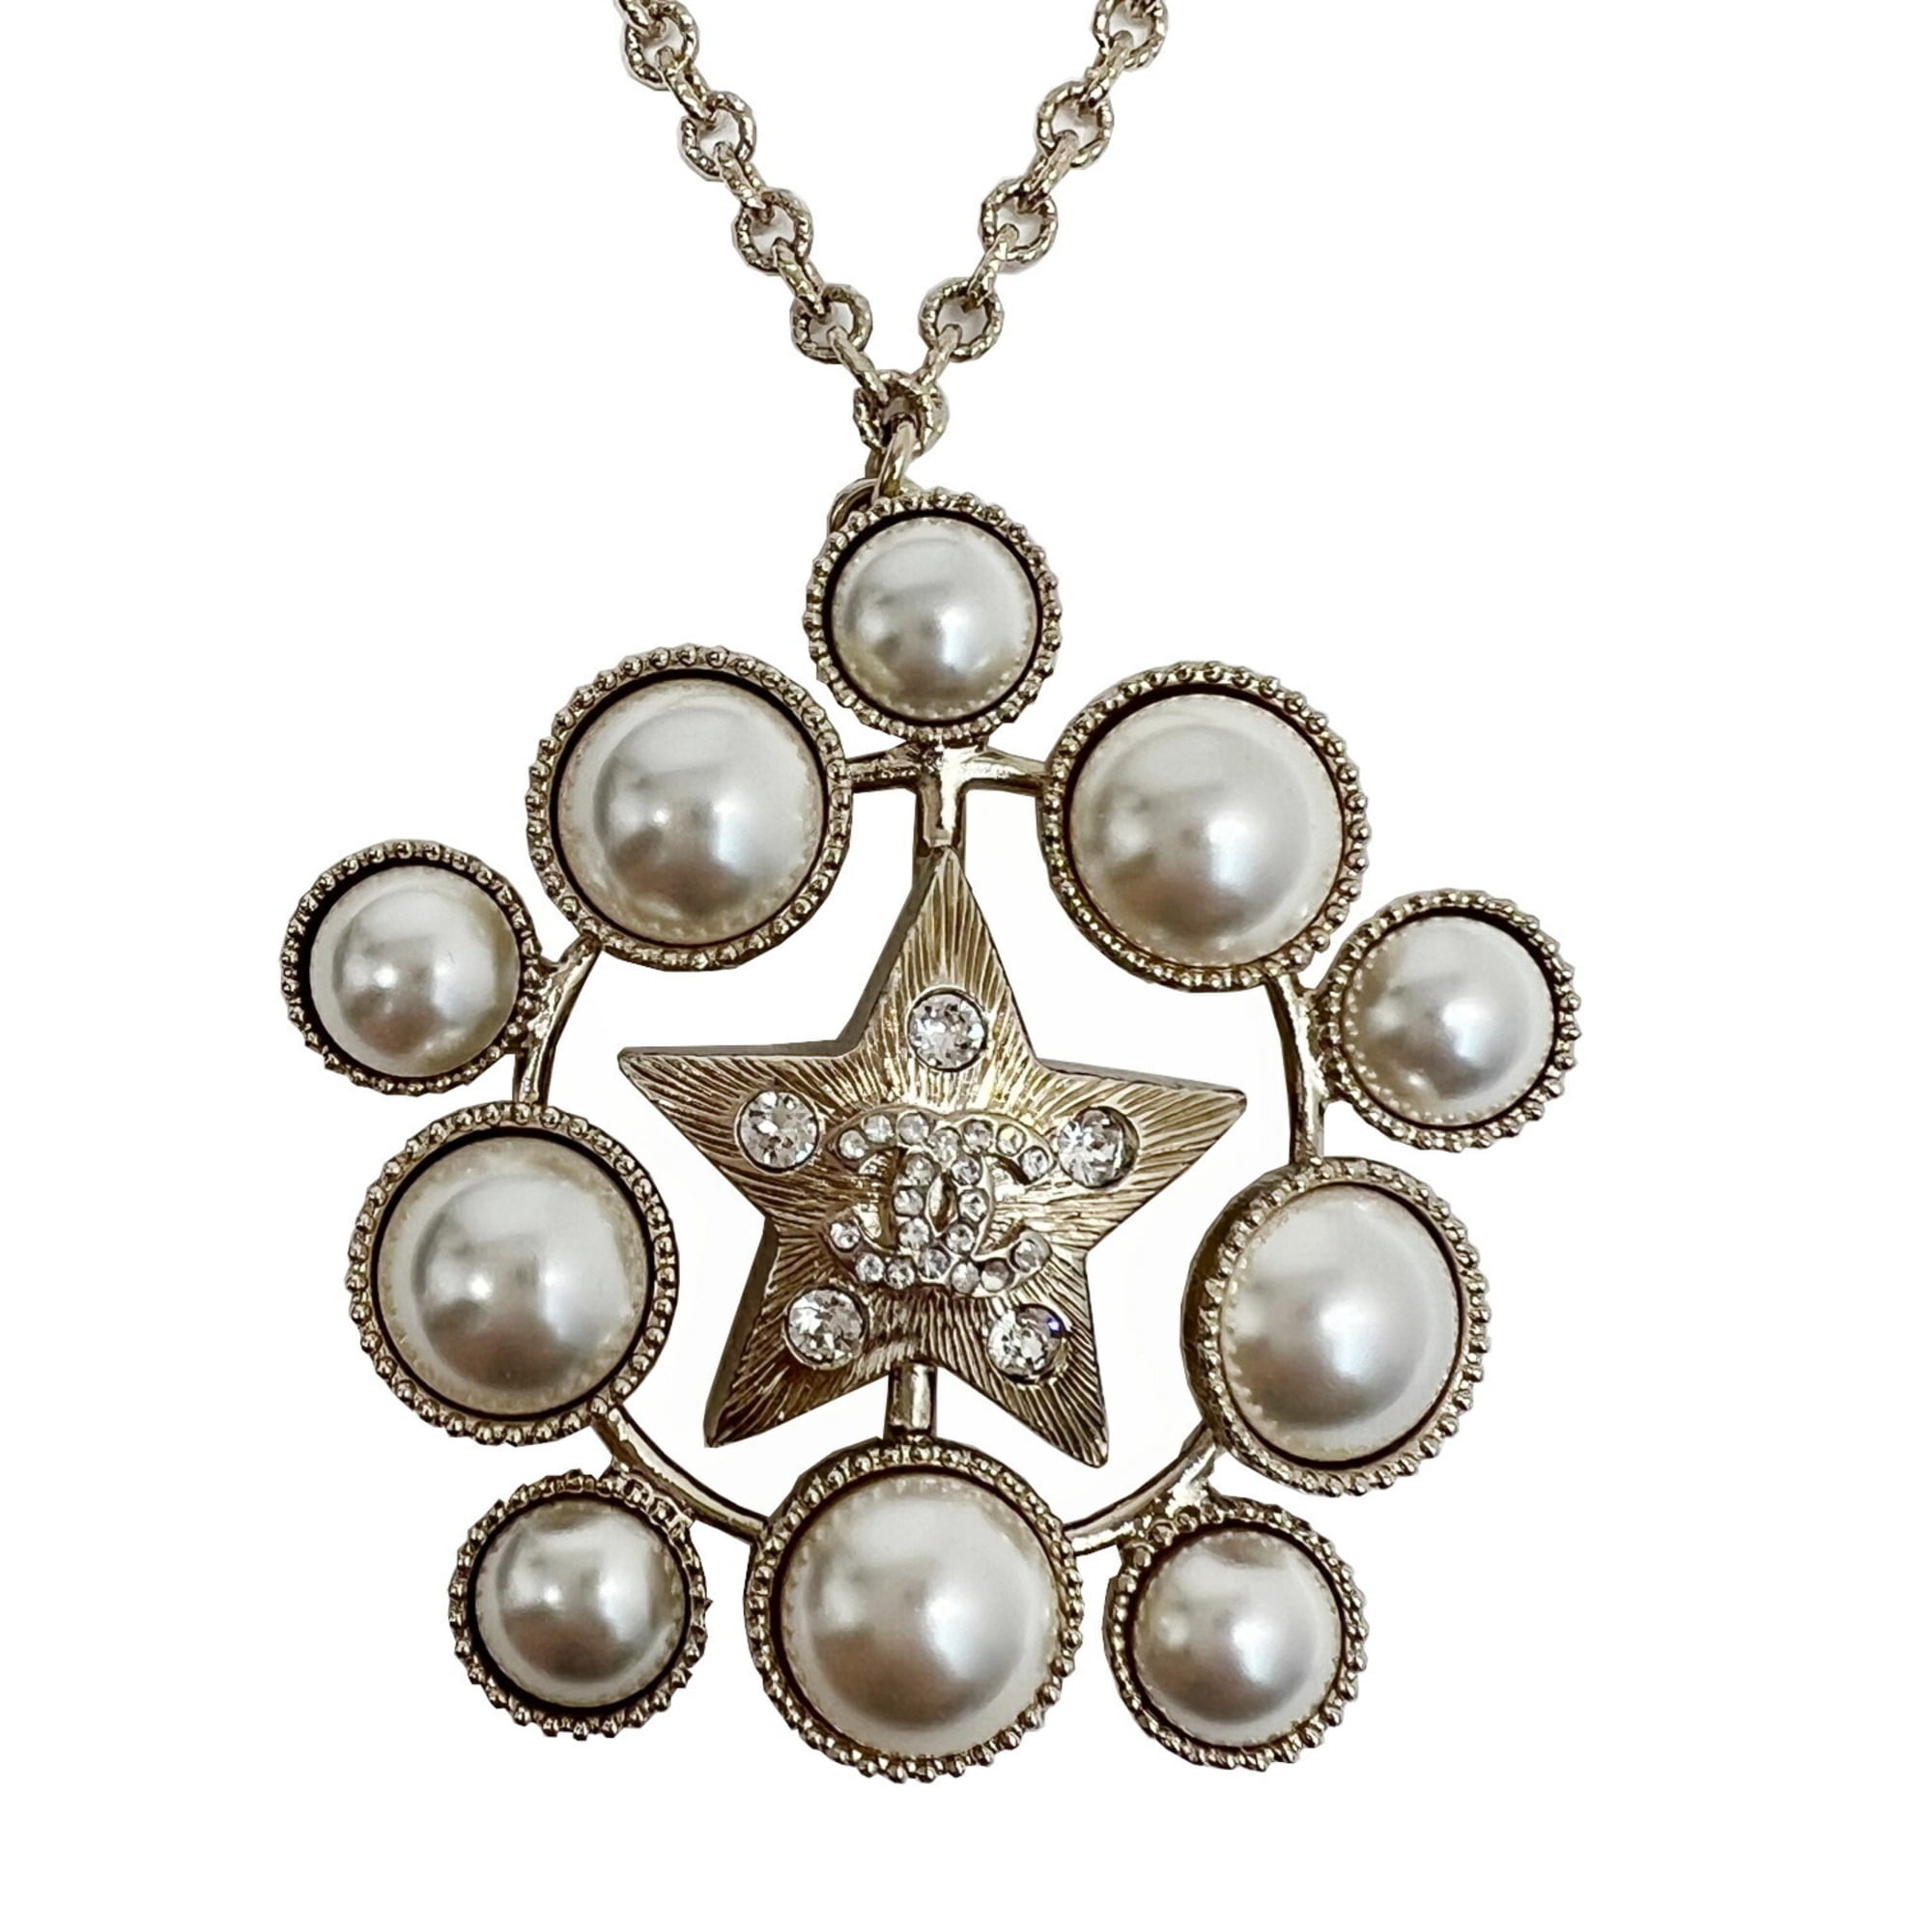 Chanel Necklace Women B19S Rhinestone Pearl Gold Authentic Rare W/Box, Case